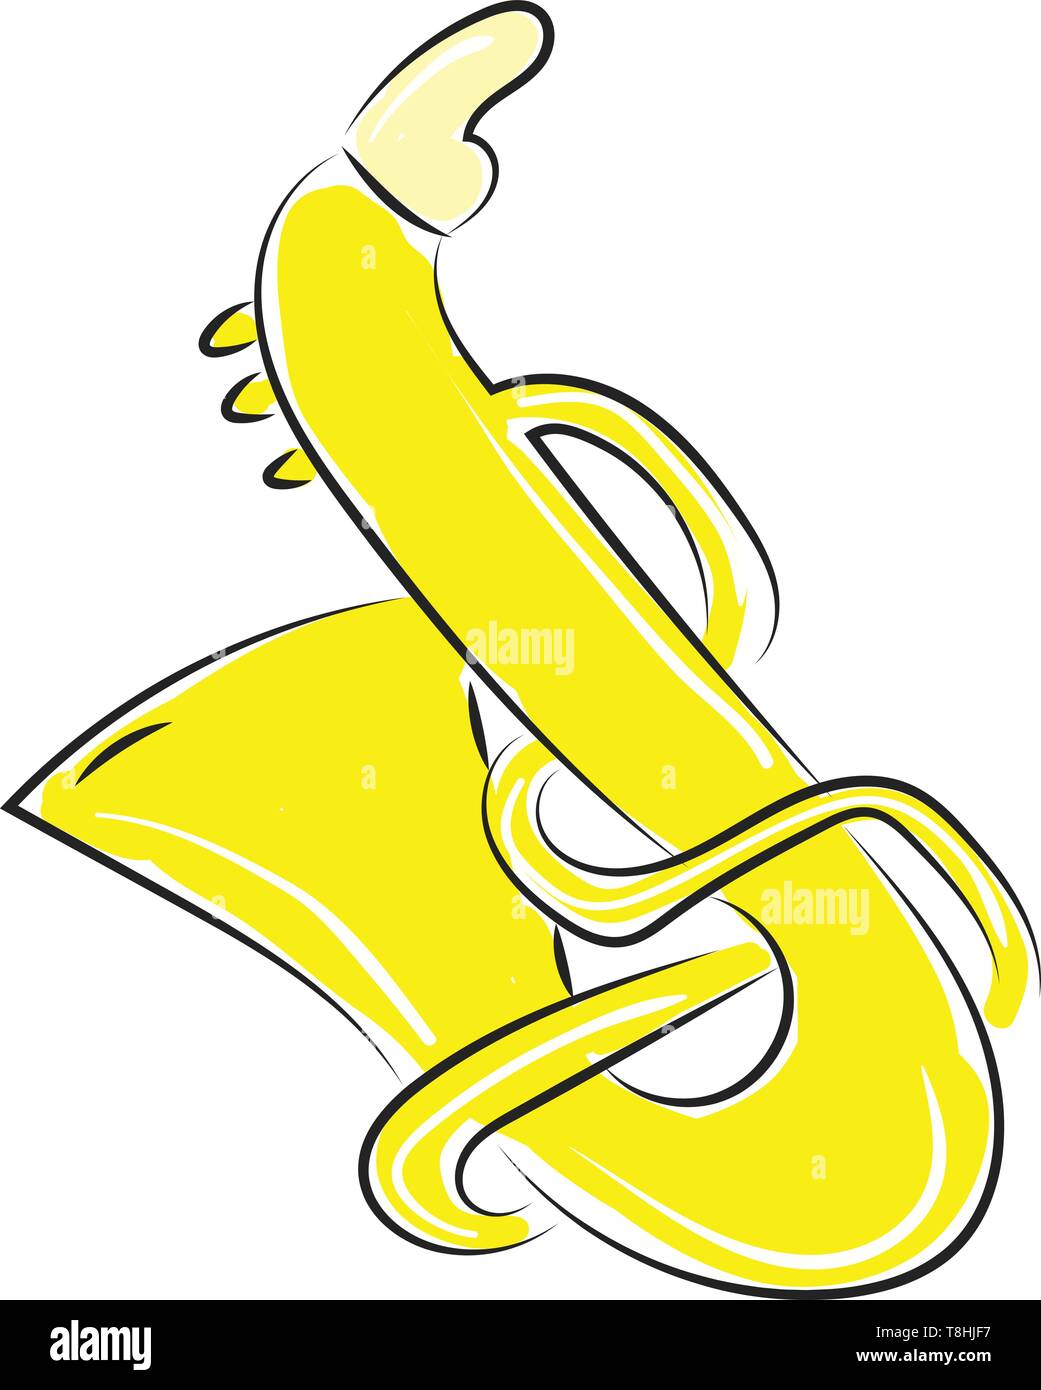 Un dessin d'un saxophone jaune, Scénario, dessin en couleur ou d'illustration. Illustration de Vecteur